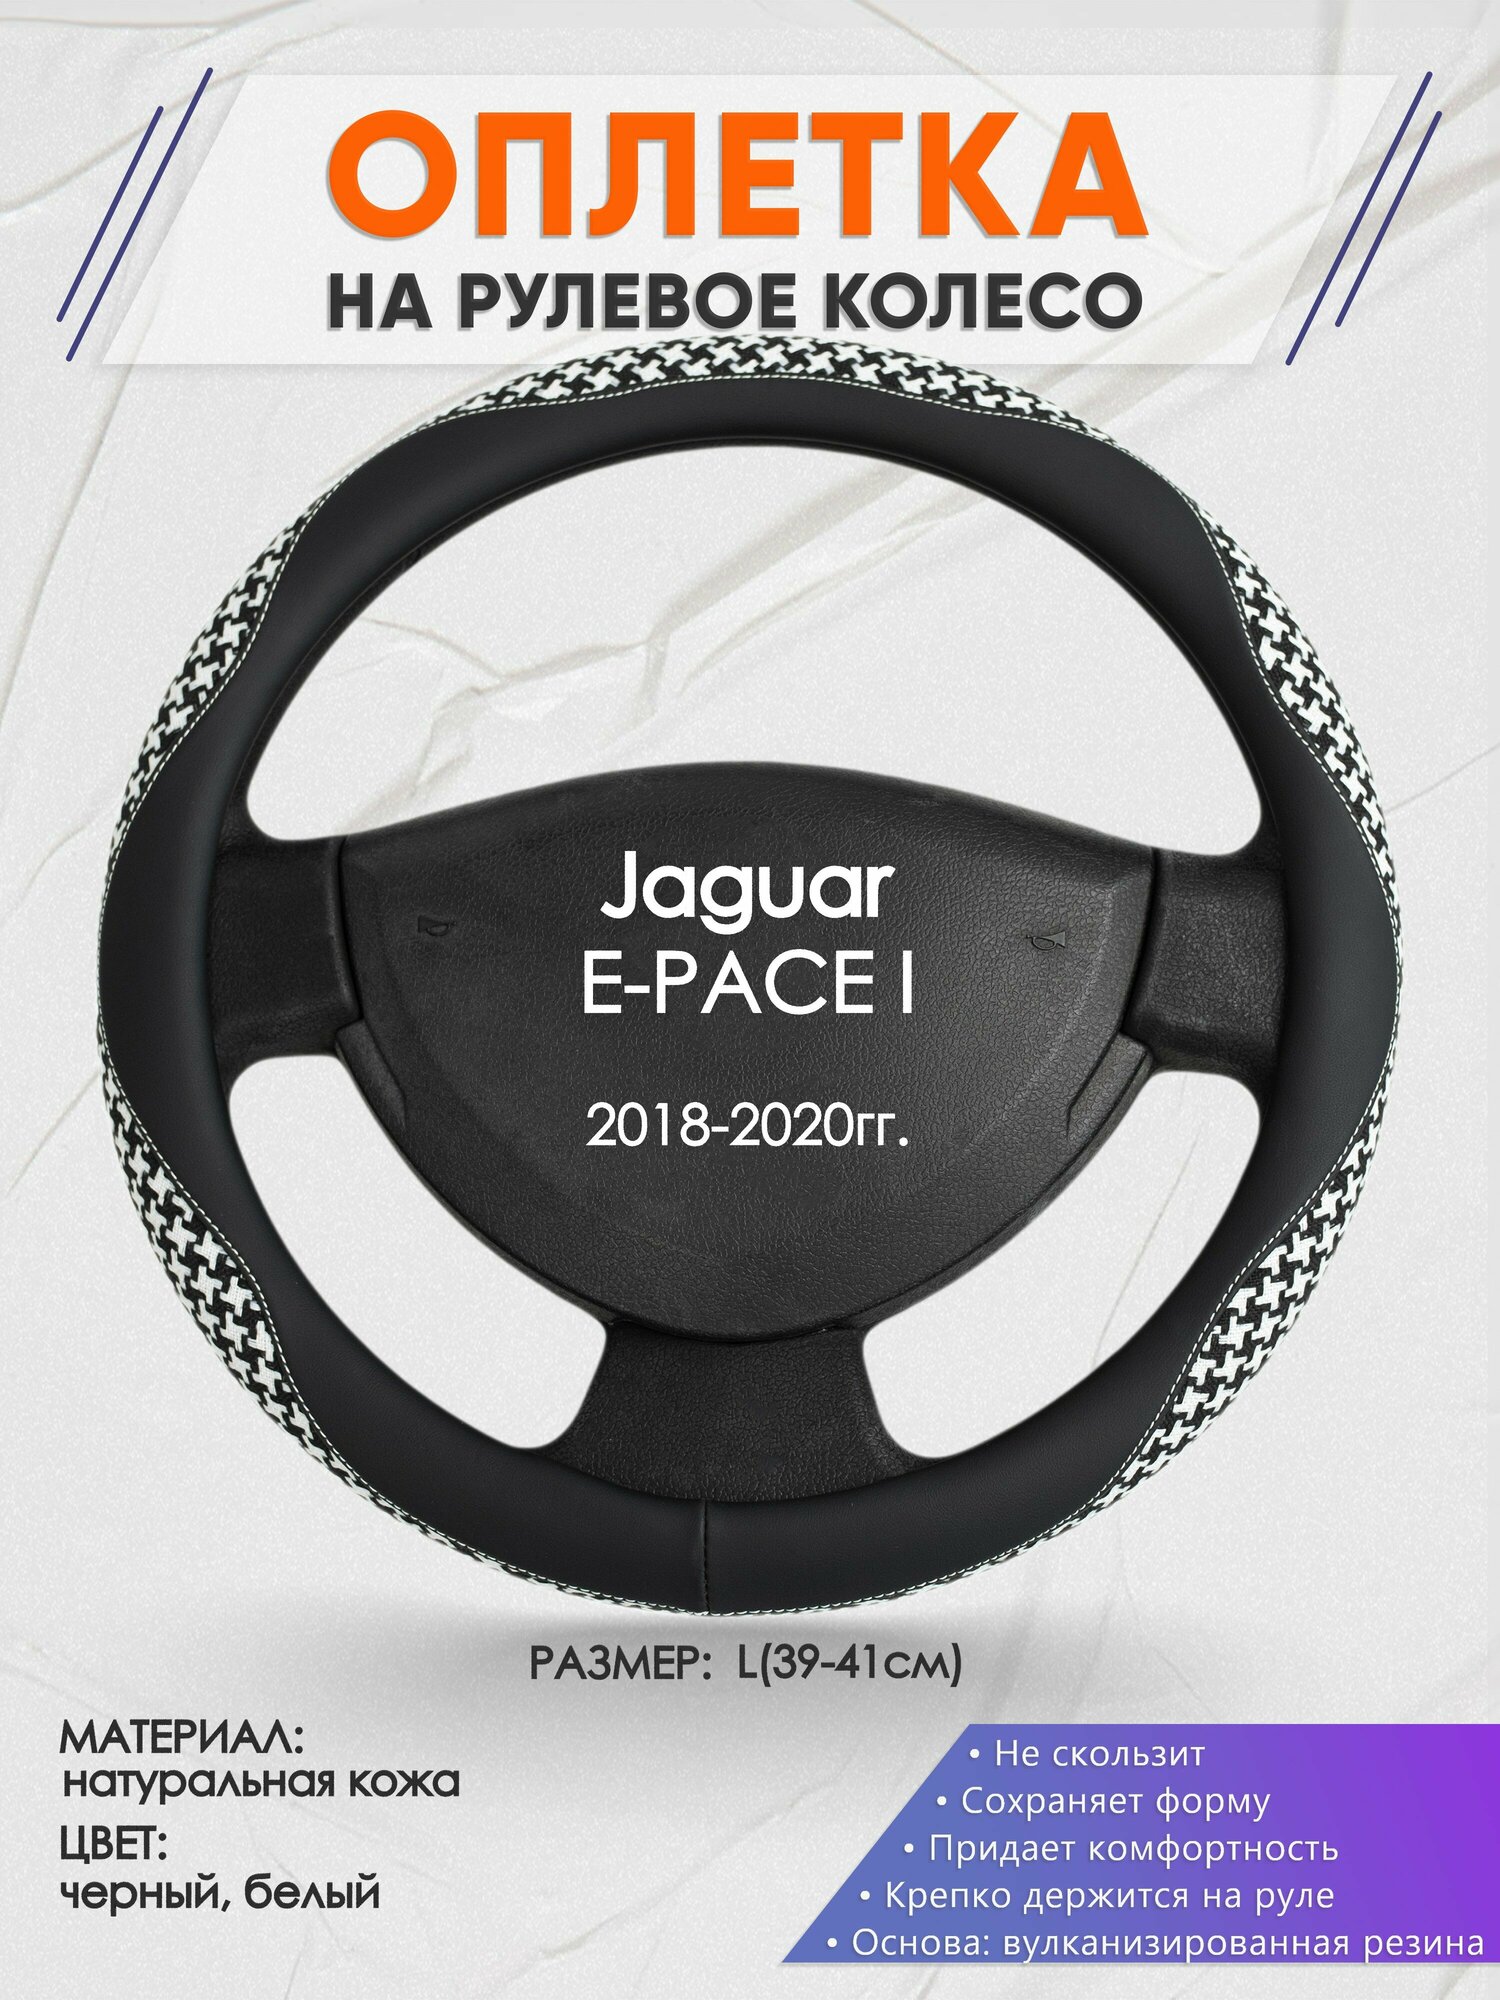 Оплетка на руль для Jaguar E-PACE I(Ягуар епасе) 2018-2020, L(39-41см), Натуральная кожа 21